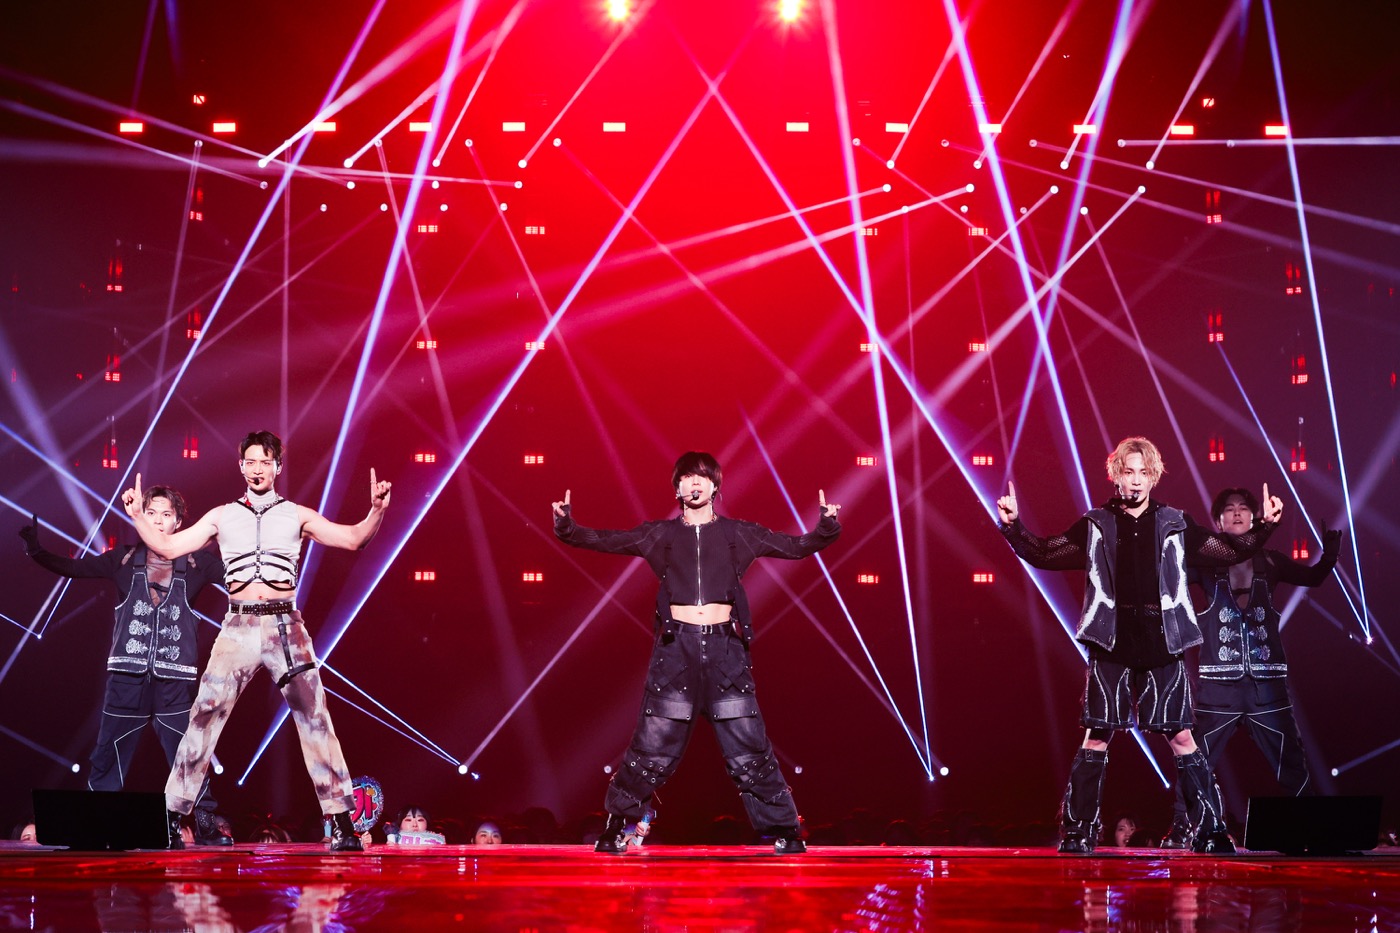 【ライブレポート】SHINee、6年ぶりのドーム公演2days大盛況で幕